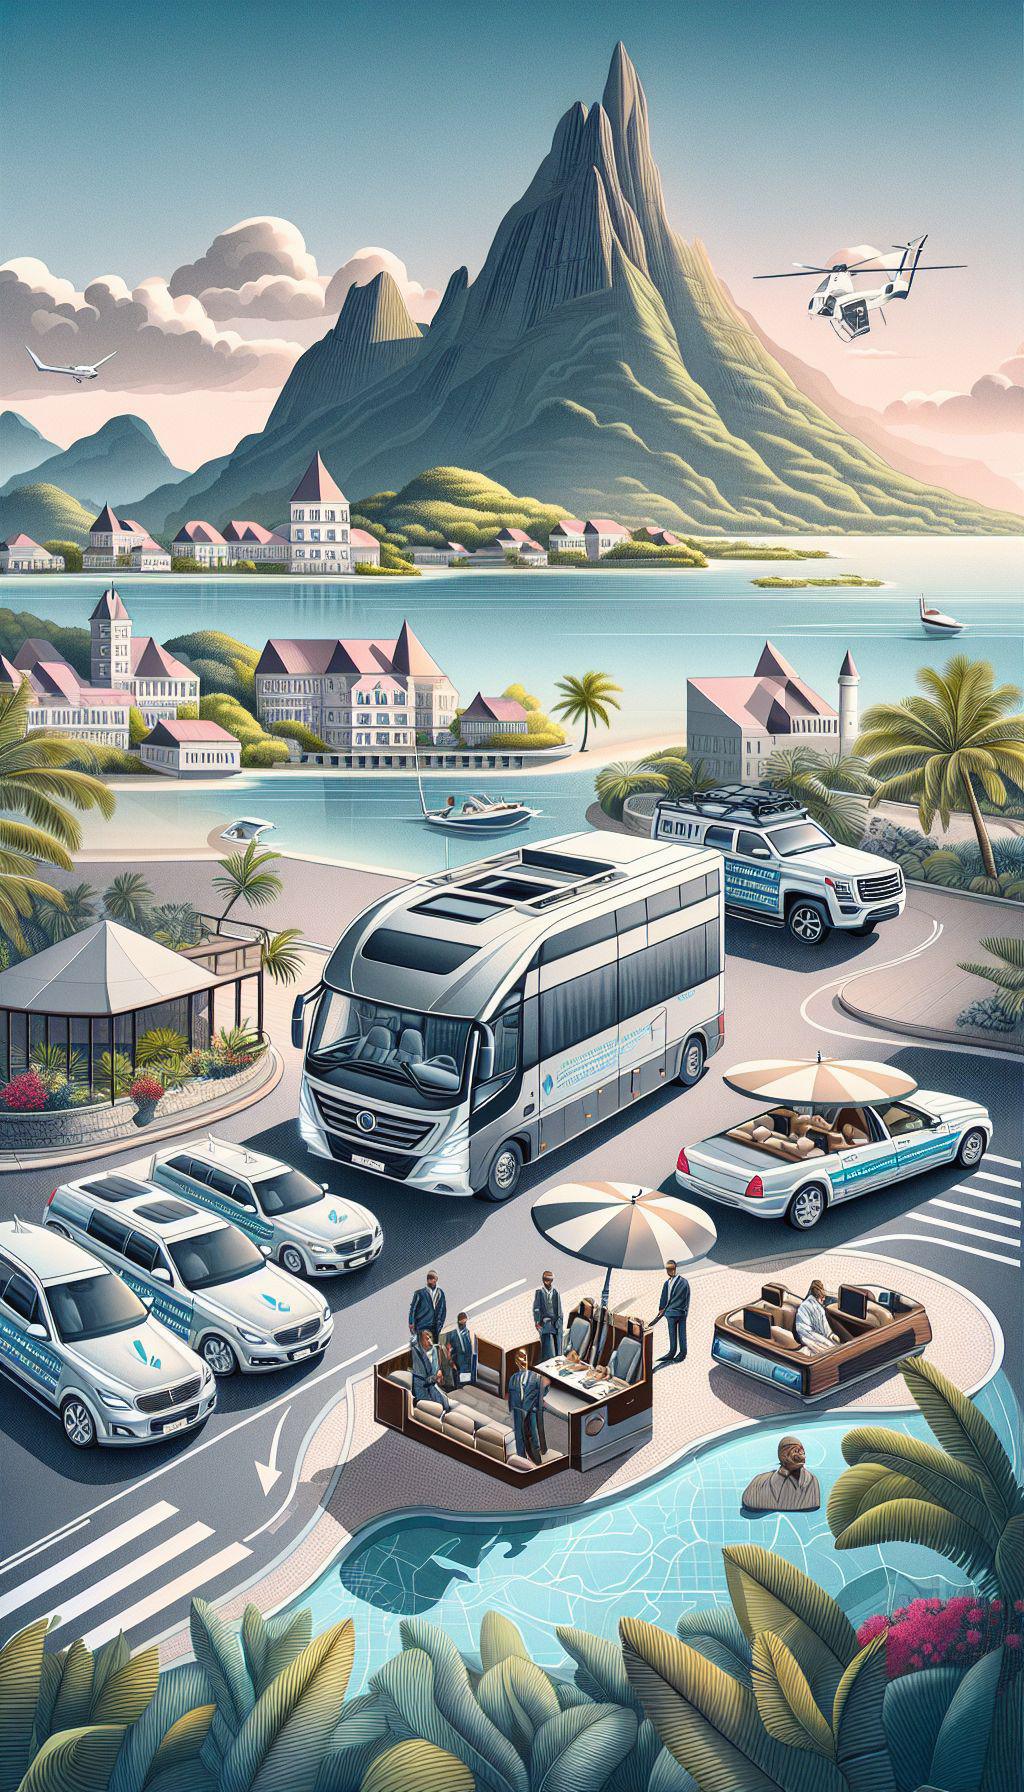 Pourquoi choisir les services de chauffeur privé de Racing luxury Madinina 972 pour découvrir les paysages de la Martinique ? 